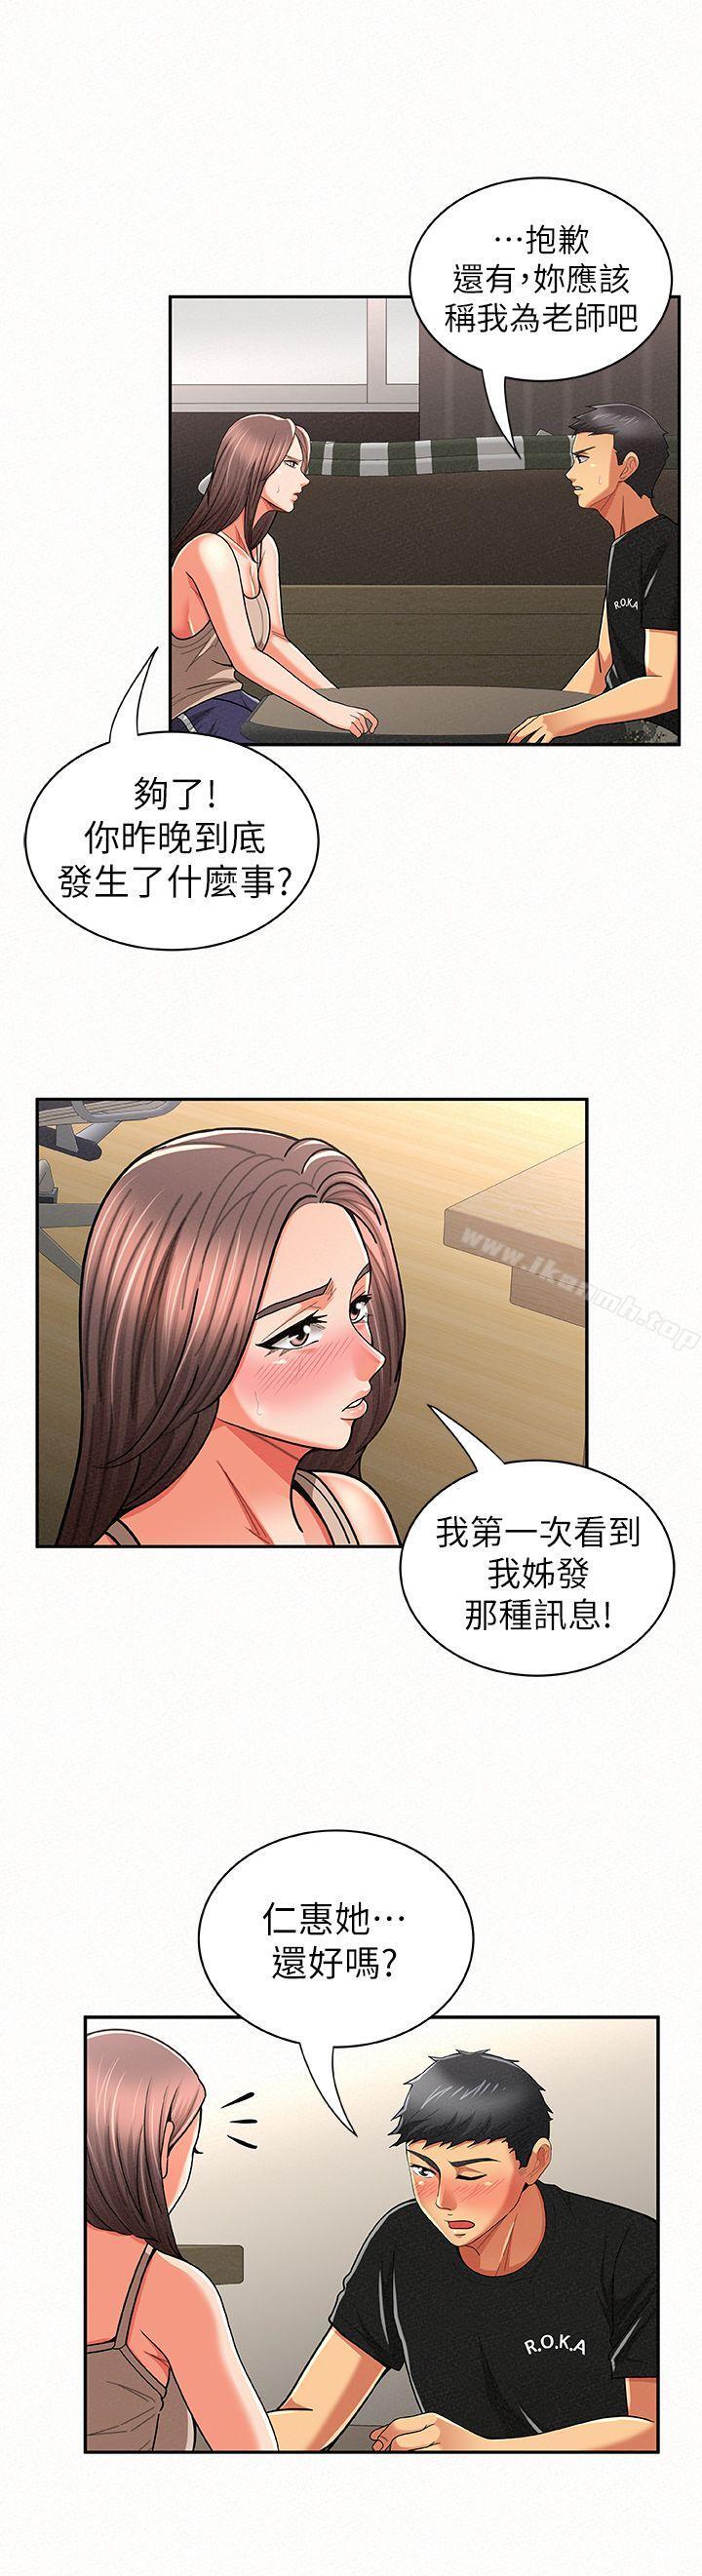 韩国漫画报告夫人韩漫_报告夫人-第20话-你跟仁惠进展到哪里了?在线免费阅读-韩国漫画-第23张图片